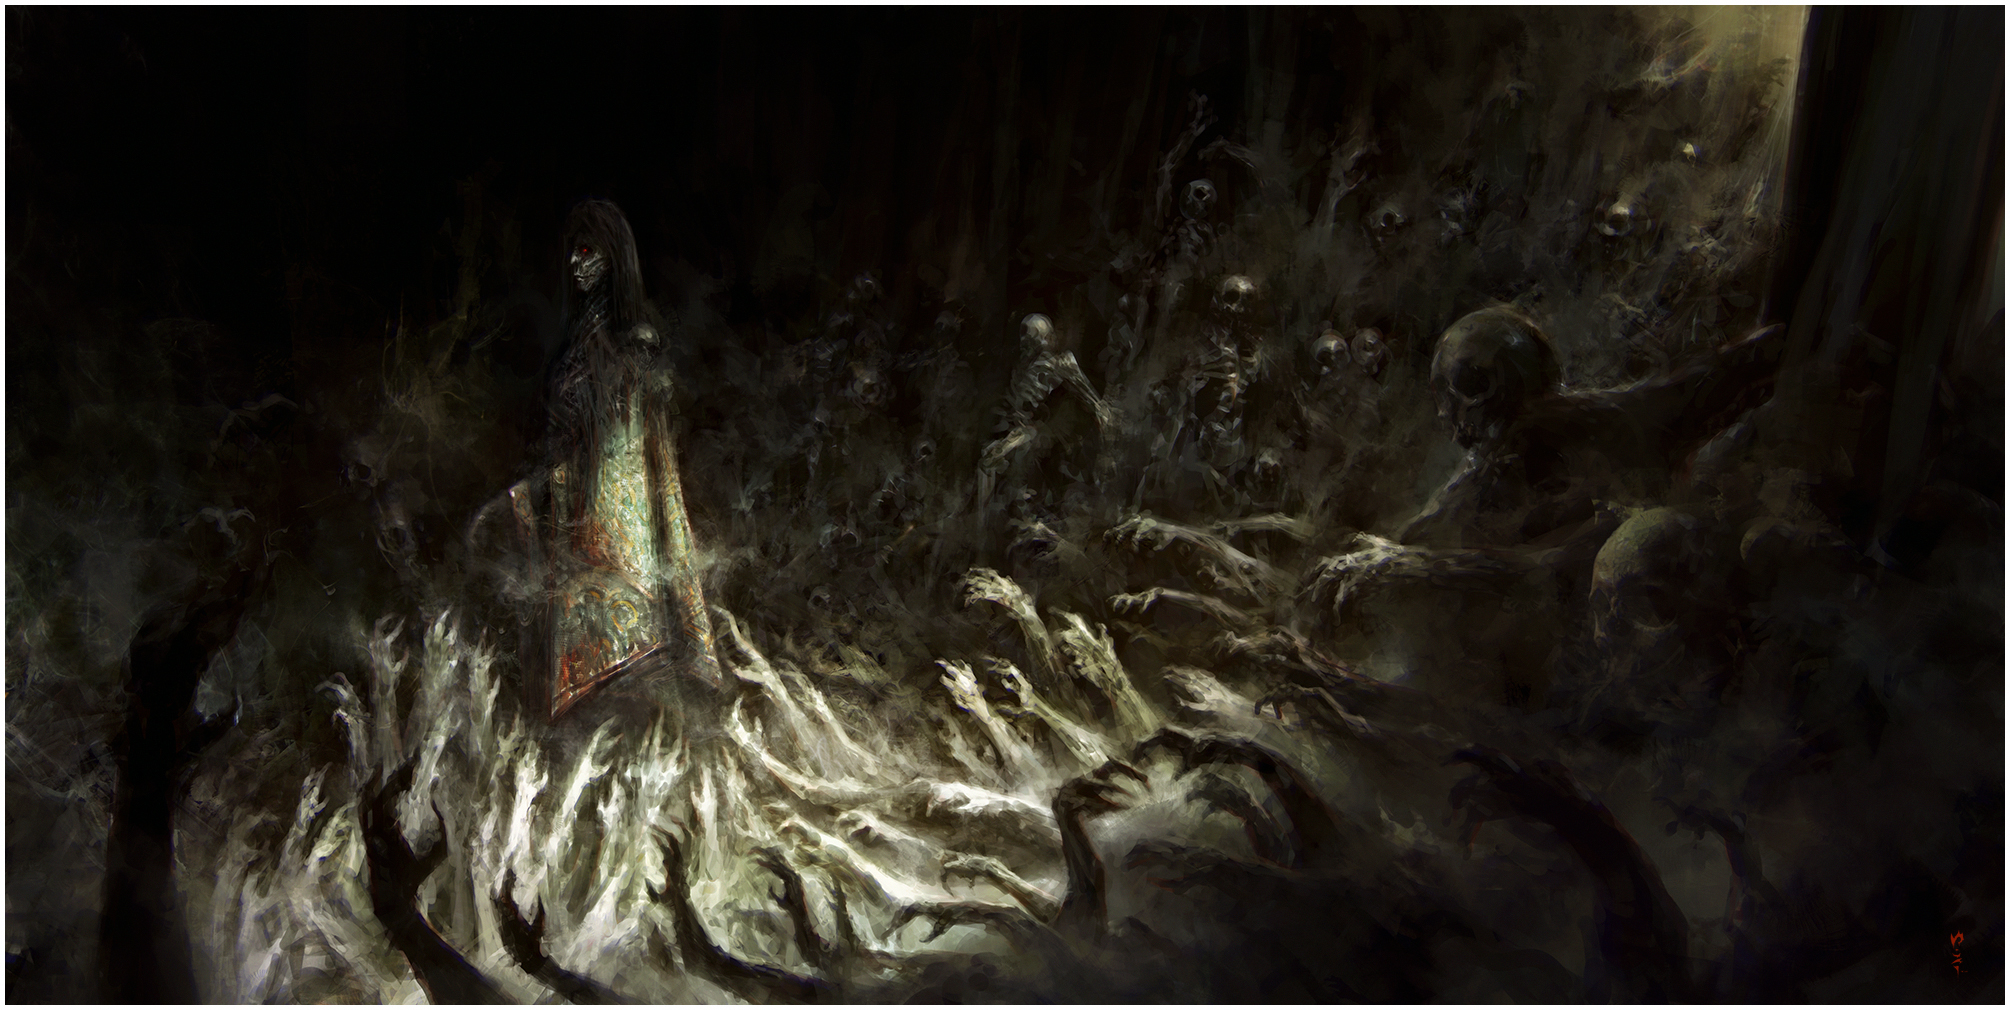 Horror Bones Fantasy Art Undead Corpse Hands Dark 2010x1010